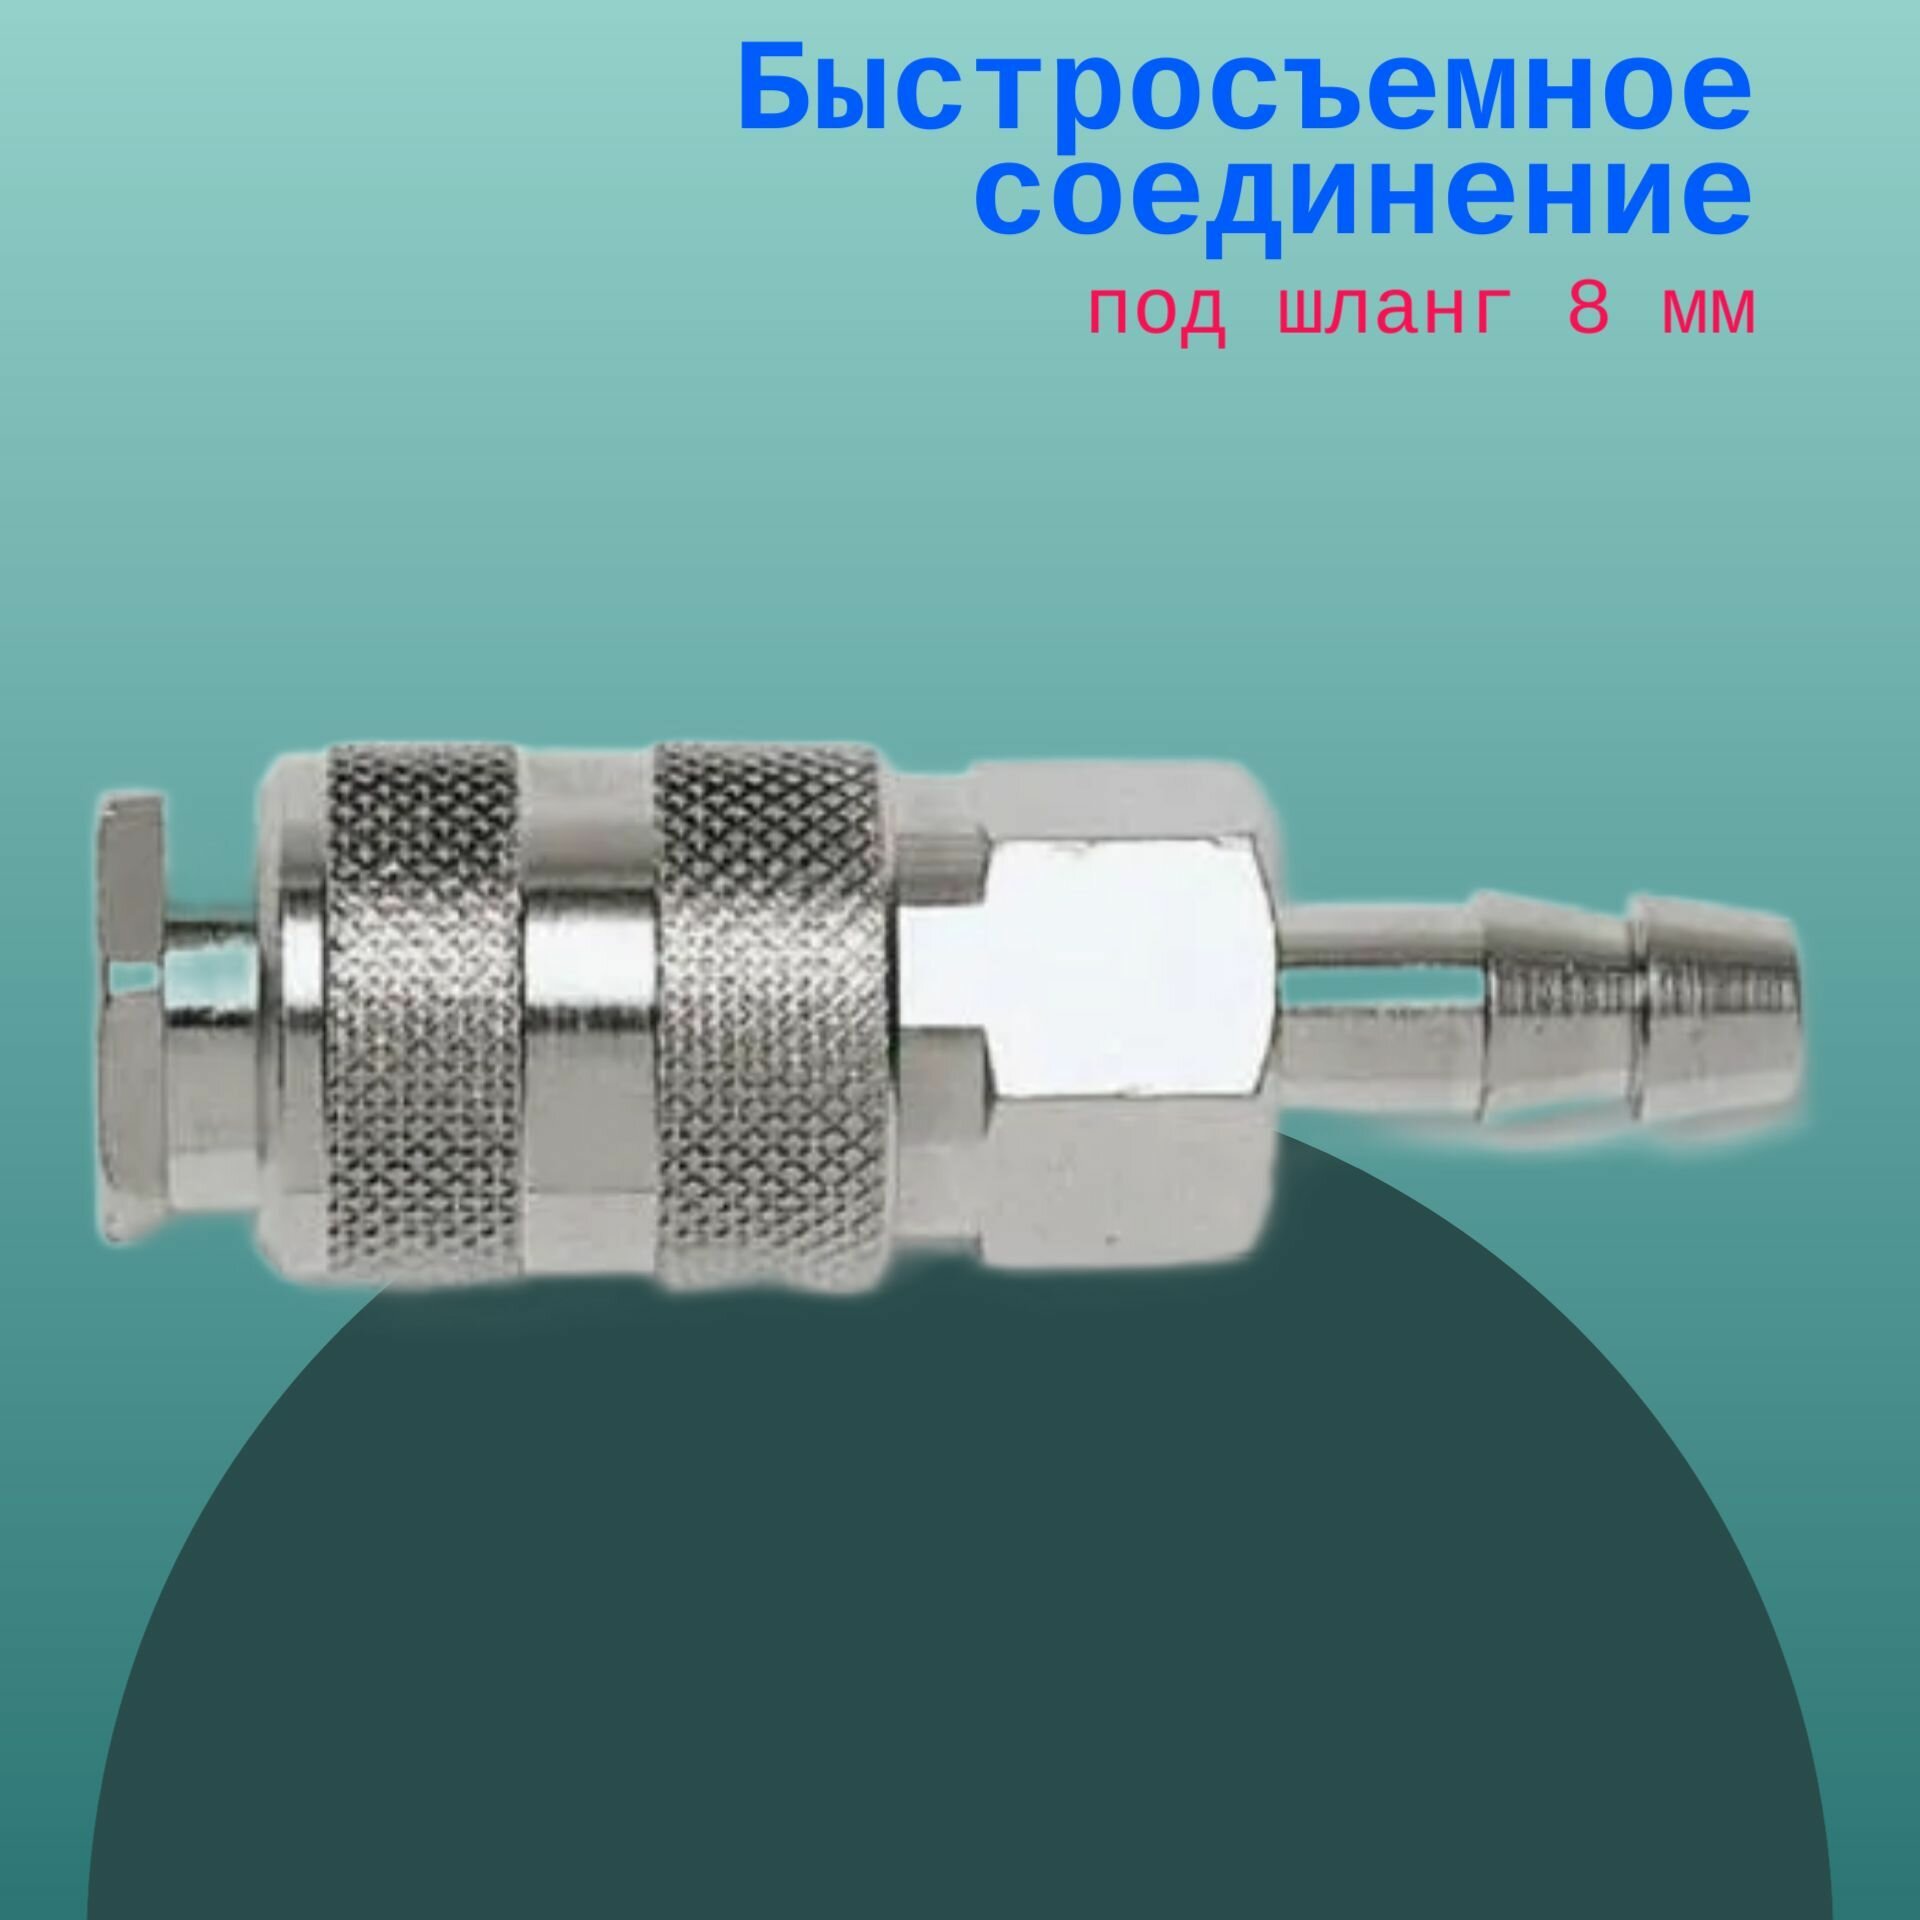 Быстросъемное соединение под шланг 8 мм / Переходник для пневмоинструмента / Штуцер- быстросъемное соединение для шланга